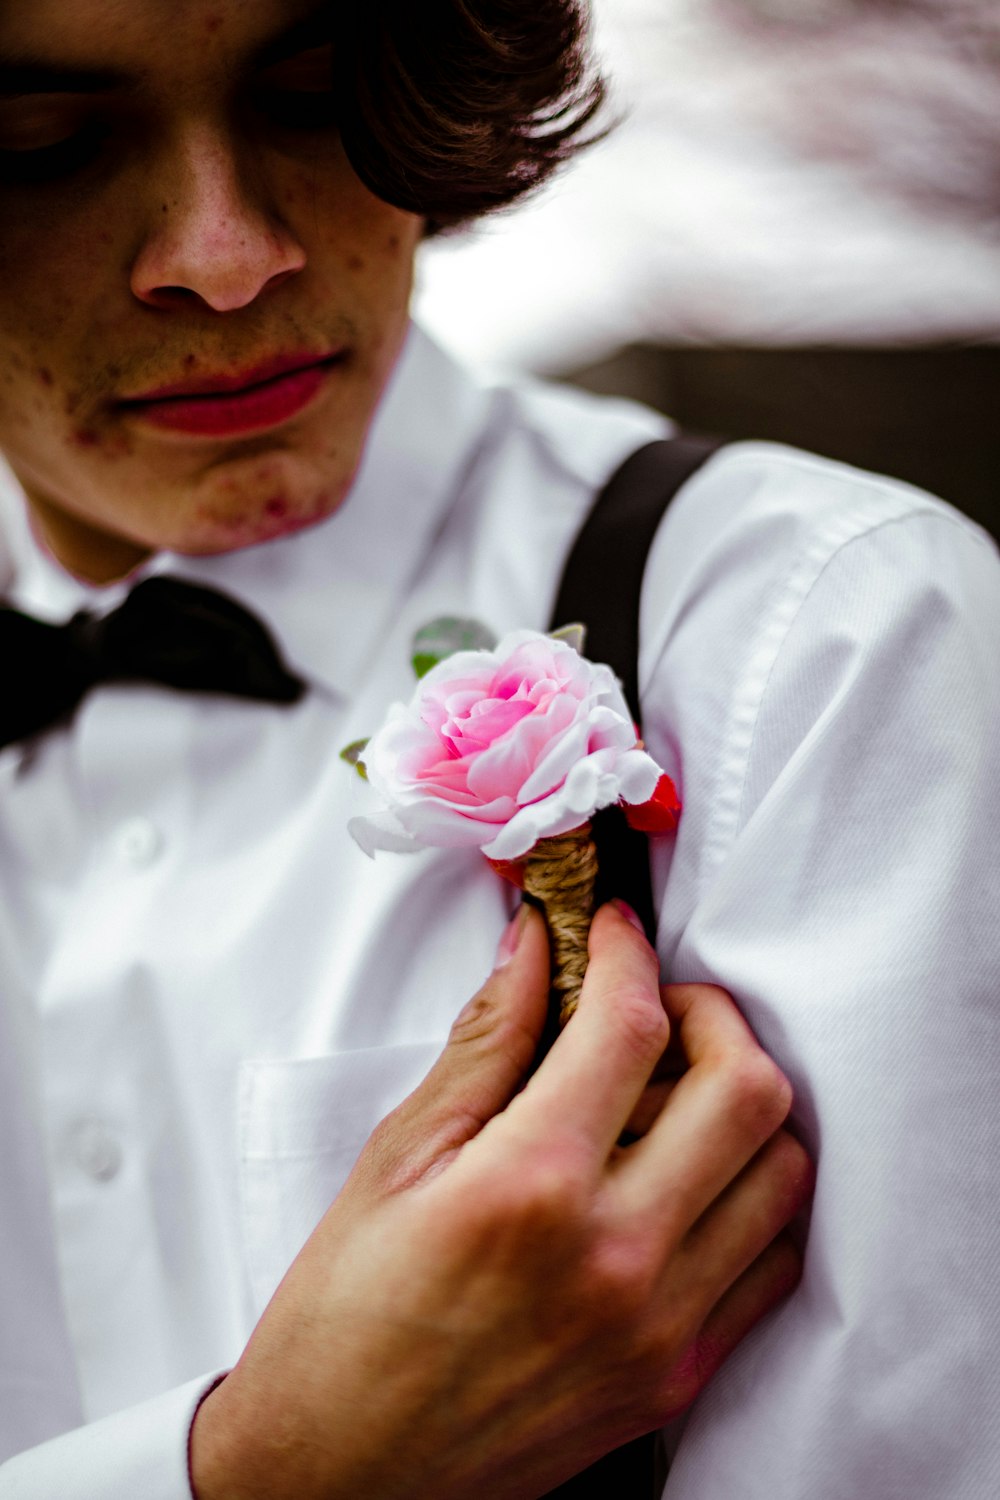 homme en chemise blanche avec noeud papillon noir tenant une rose rose  photo – Photo Fleur Gratuite sur Unsplash